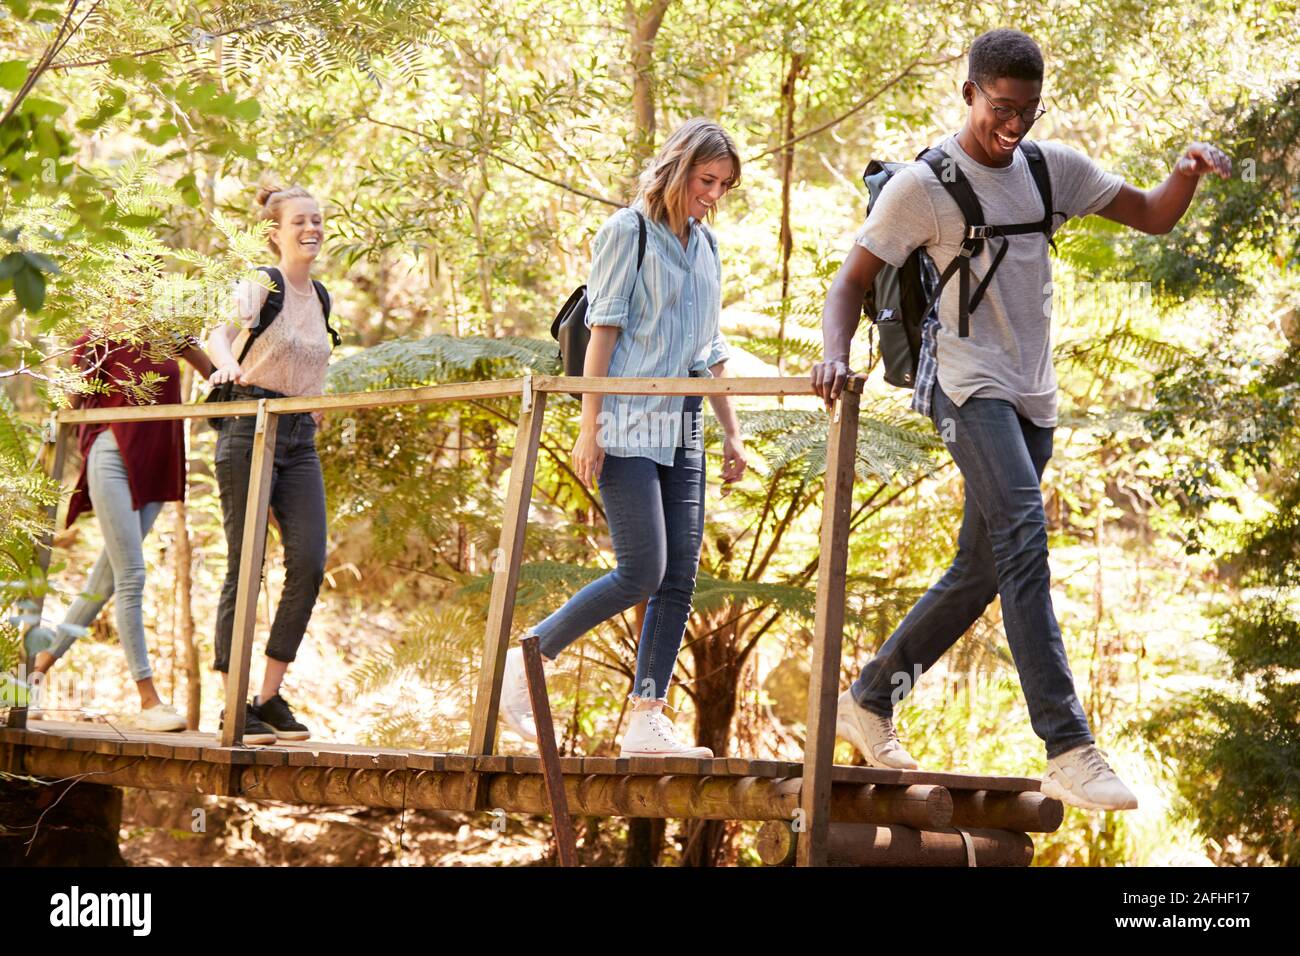 Adultos jóvenes amigos cruzando un puente peatonal durante una caminata en el bosque, longitud completa Foto de stock